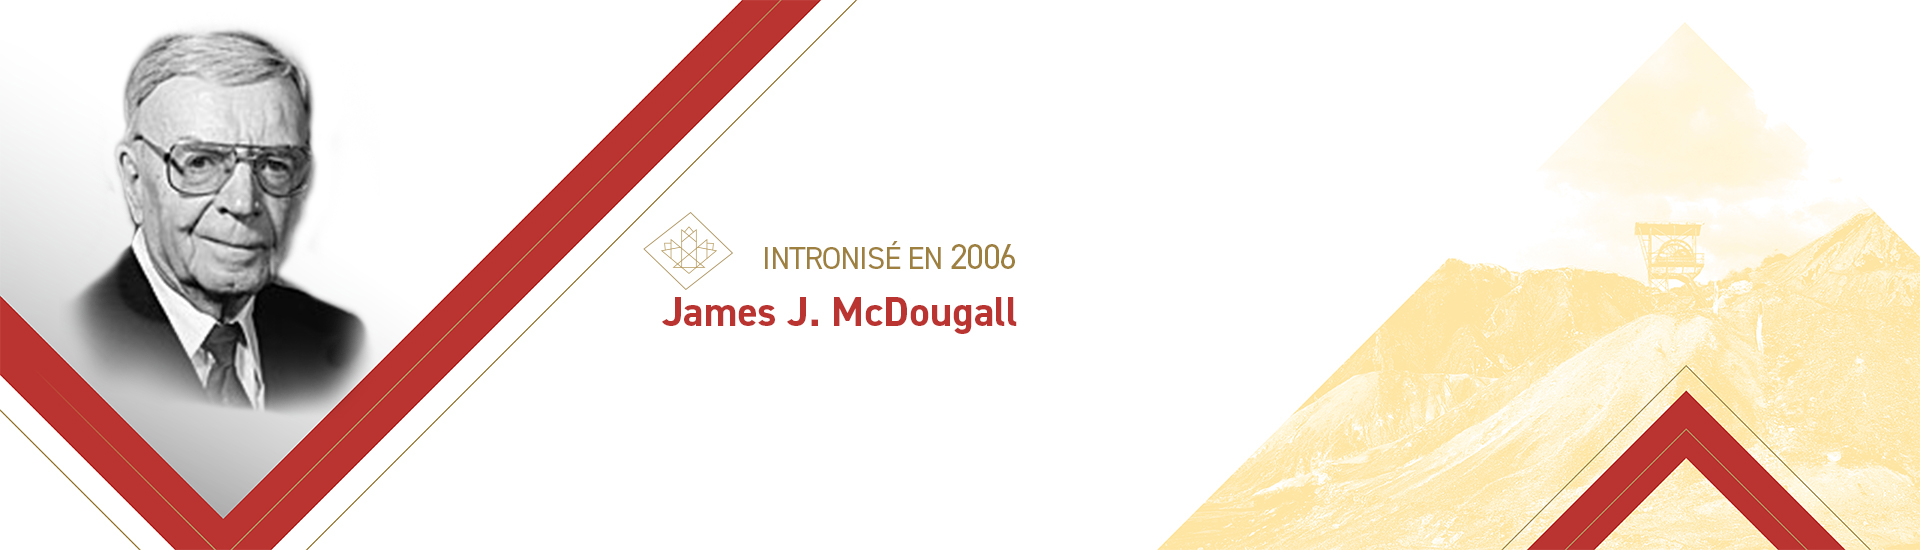 James J. McDougall (1925 – 2011)